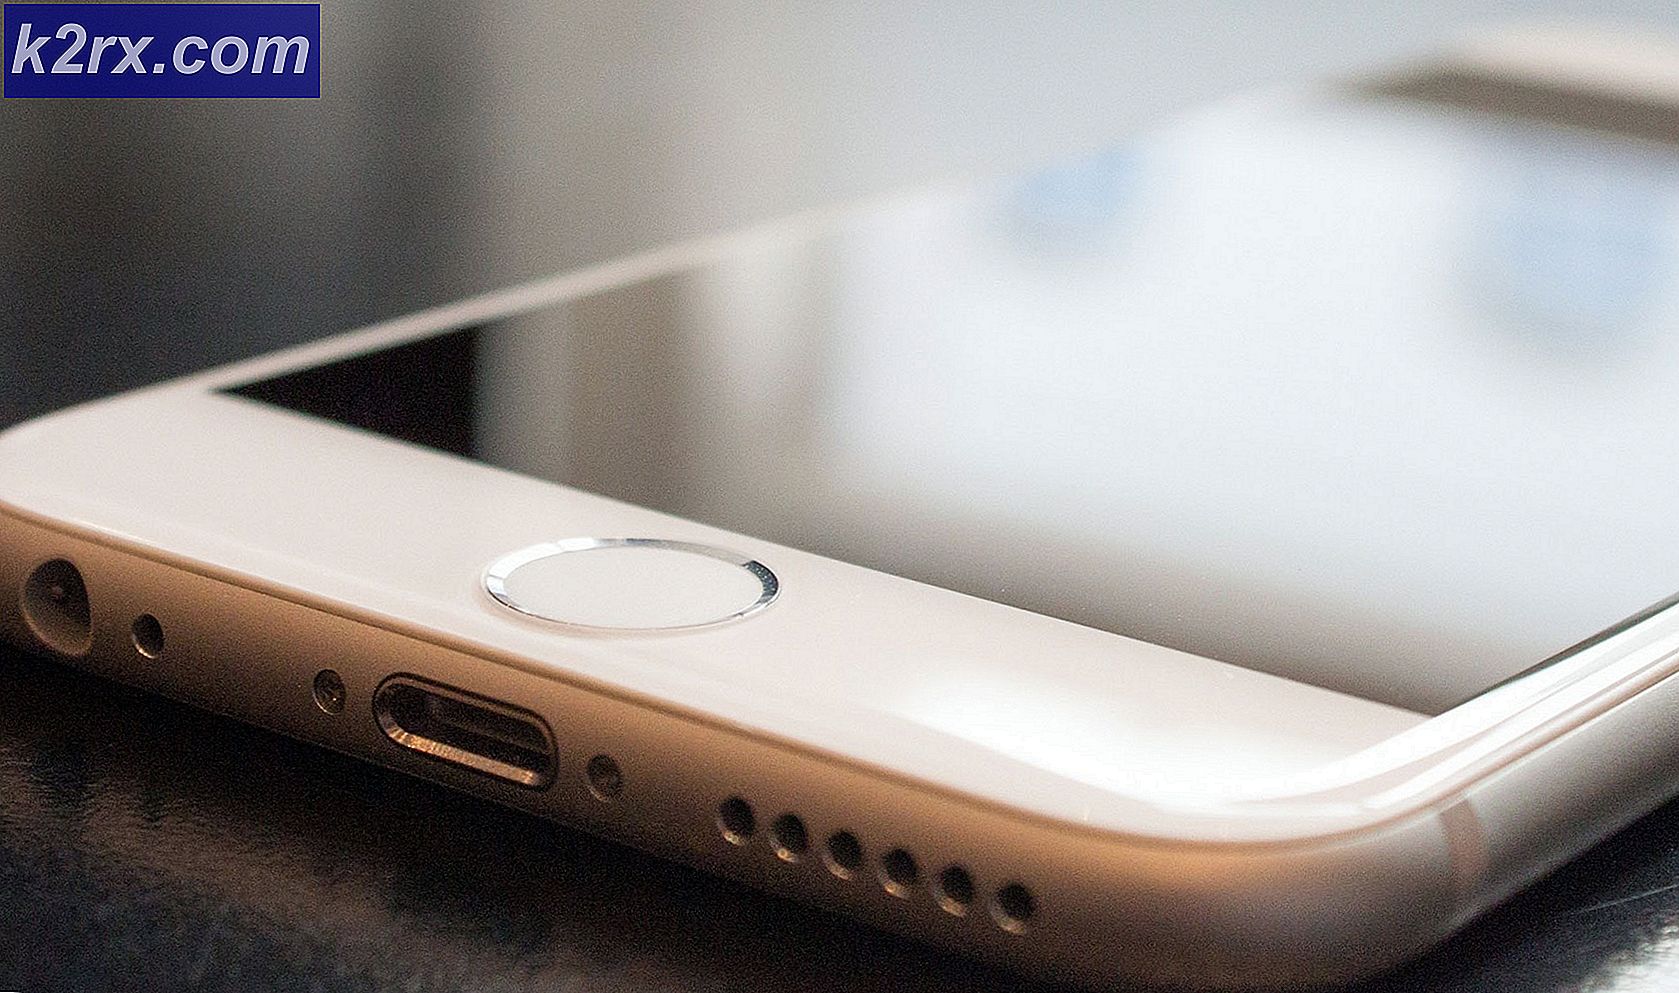 So beheben Sie die nicht funktionierende Home-Taste Ihres iPhones